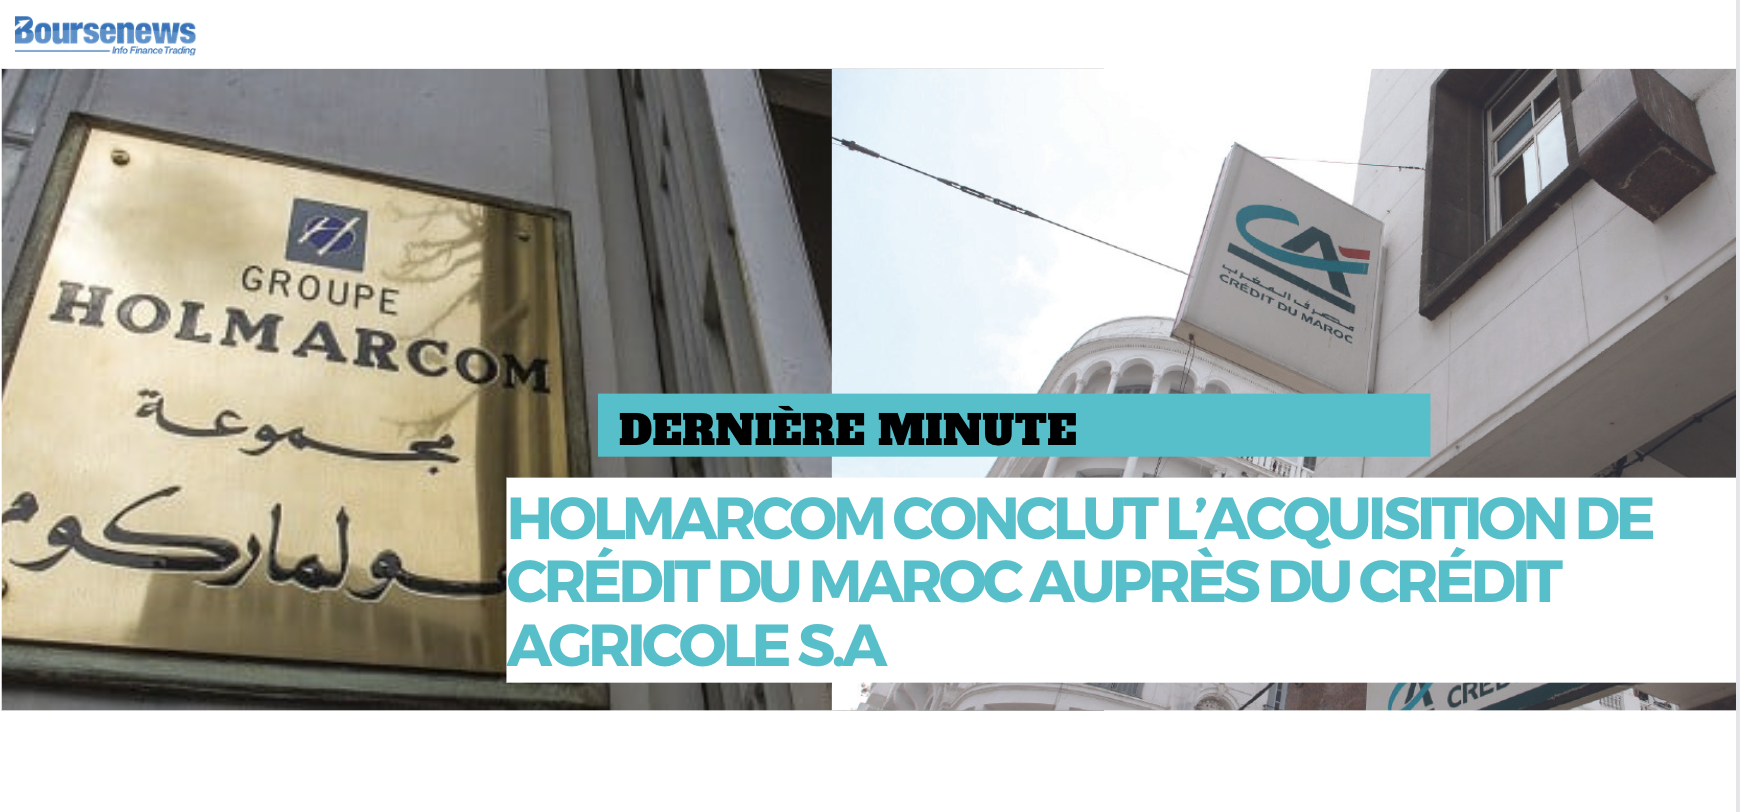 Holmarcom conclut l’acquisition de Crédit du Maroc auprès du Crédit Agricole S.A